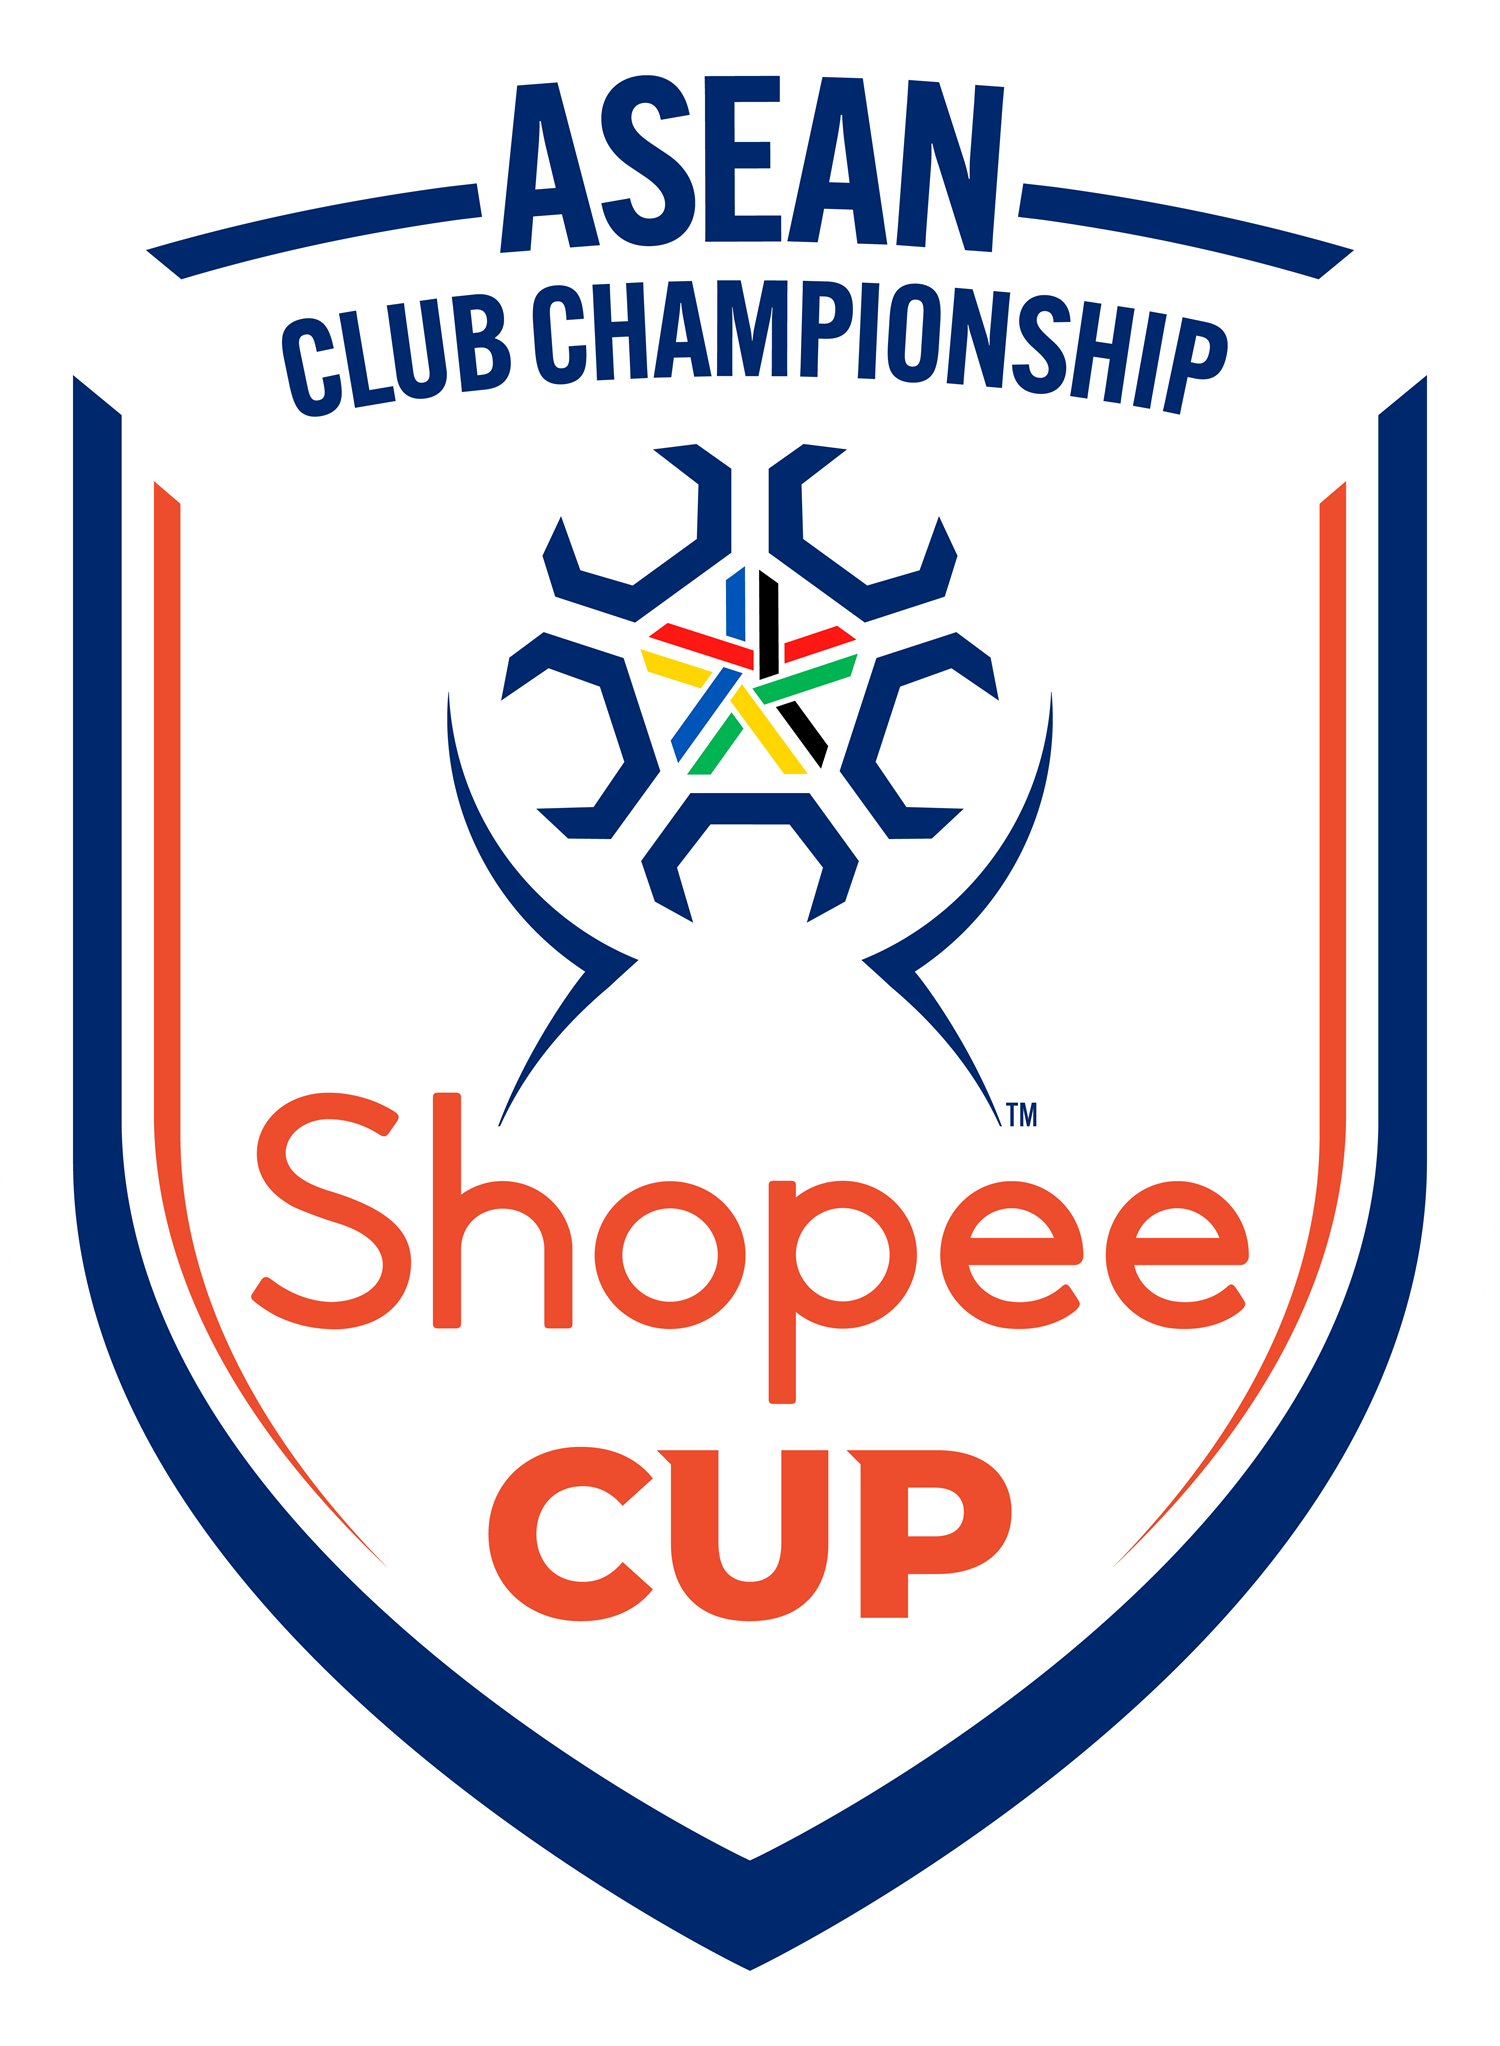 Logo Shopee Cup. Major General Khiev Sameth, President of ASEAN Football Federation (AFF), menyampaikan bahwa momen ini menandai langkah bersejarah bagi sepak bola ASEAN. Shopee Cup™ akan menjadi aspek penting dalam menciptakan masa depan yang menarik bagi klub sepak bola ASEAN dan mentransformasi.